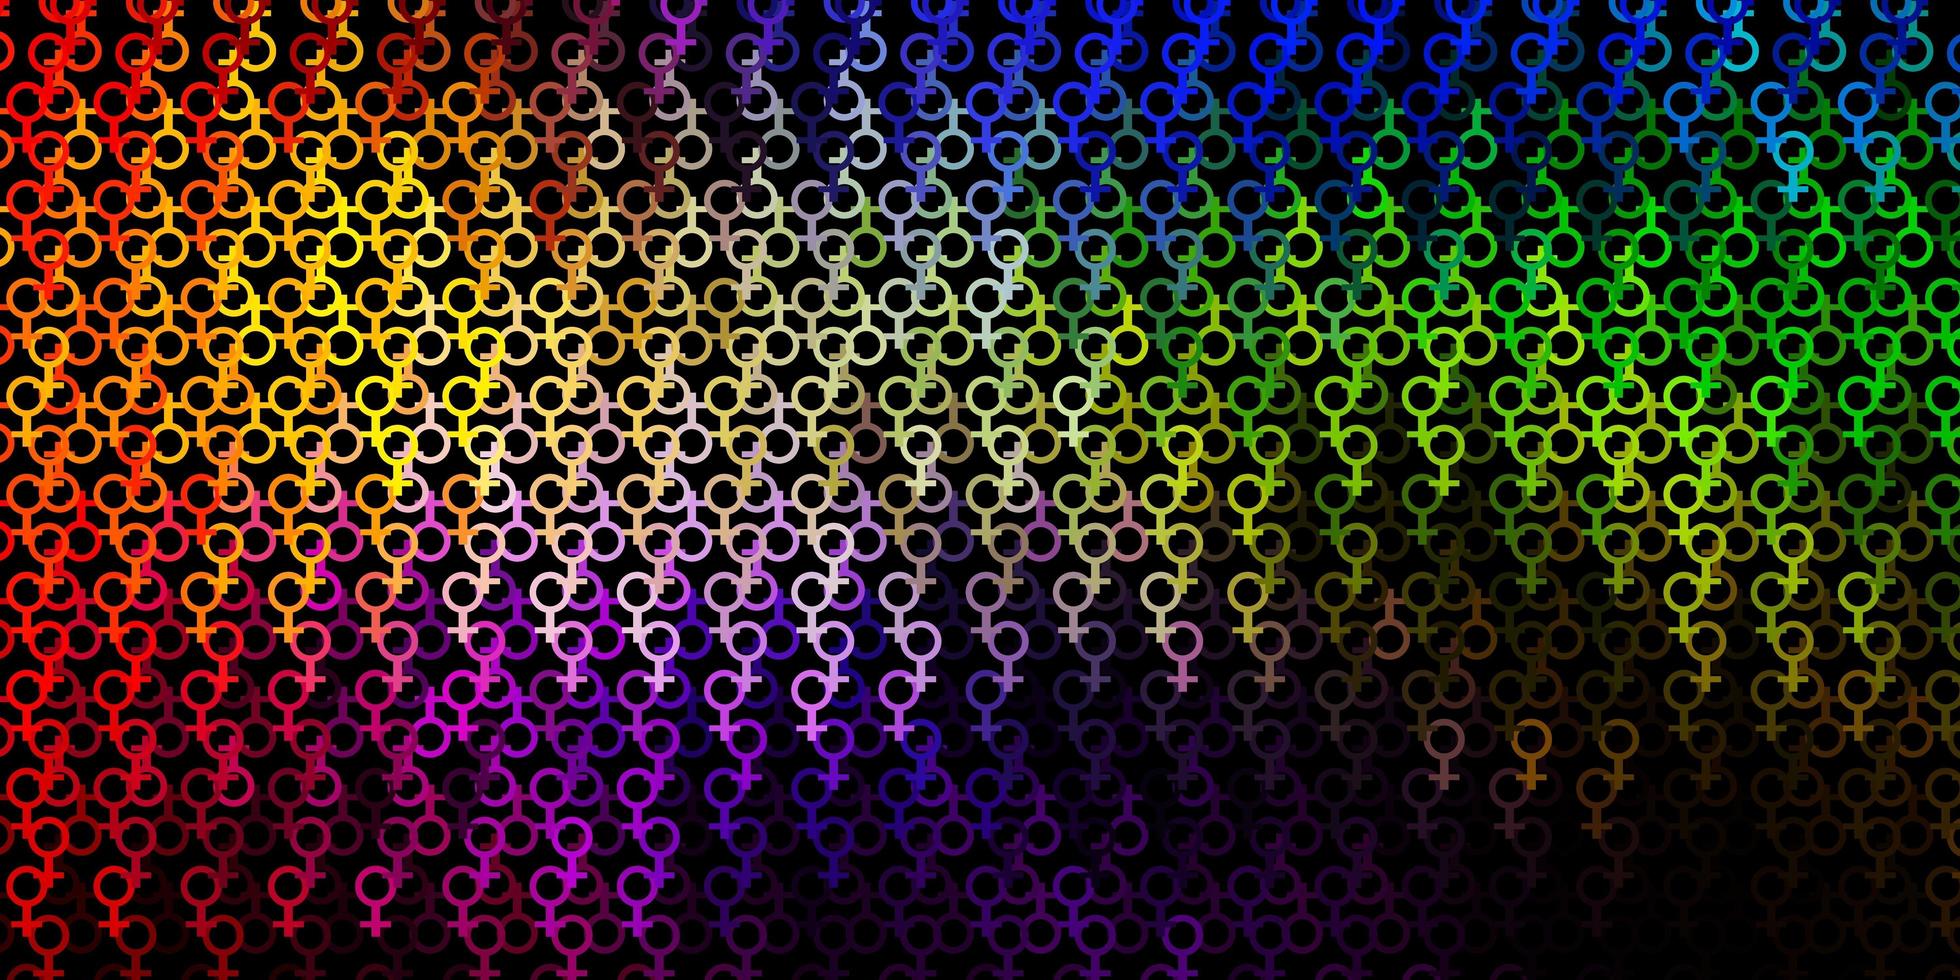 sfondo vettoriale multicolore scuro con simboli occulti.